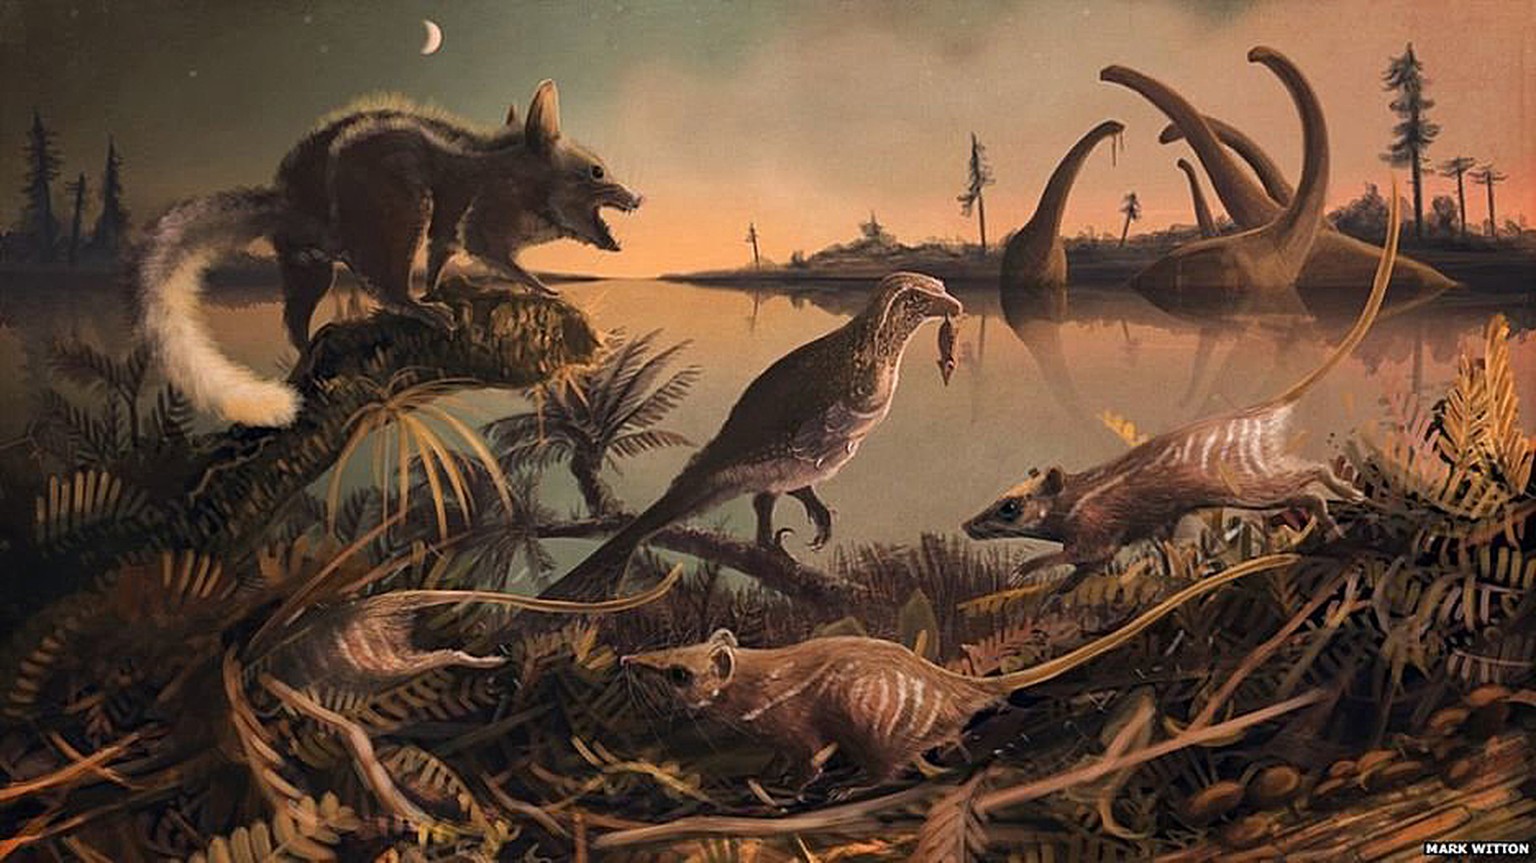 Die englische Küste vor 145 Millionen Jahren: Die Säugetiere&nbsp;<em>Durlstodon </em>(links vorn) und <em>Durlstotherium</em> (rechts und Mitte vorn) bewegen sich in einer von Dinosauriern beherrschten Welt.&nbsp;